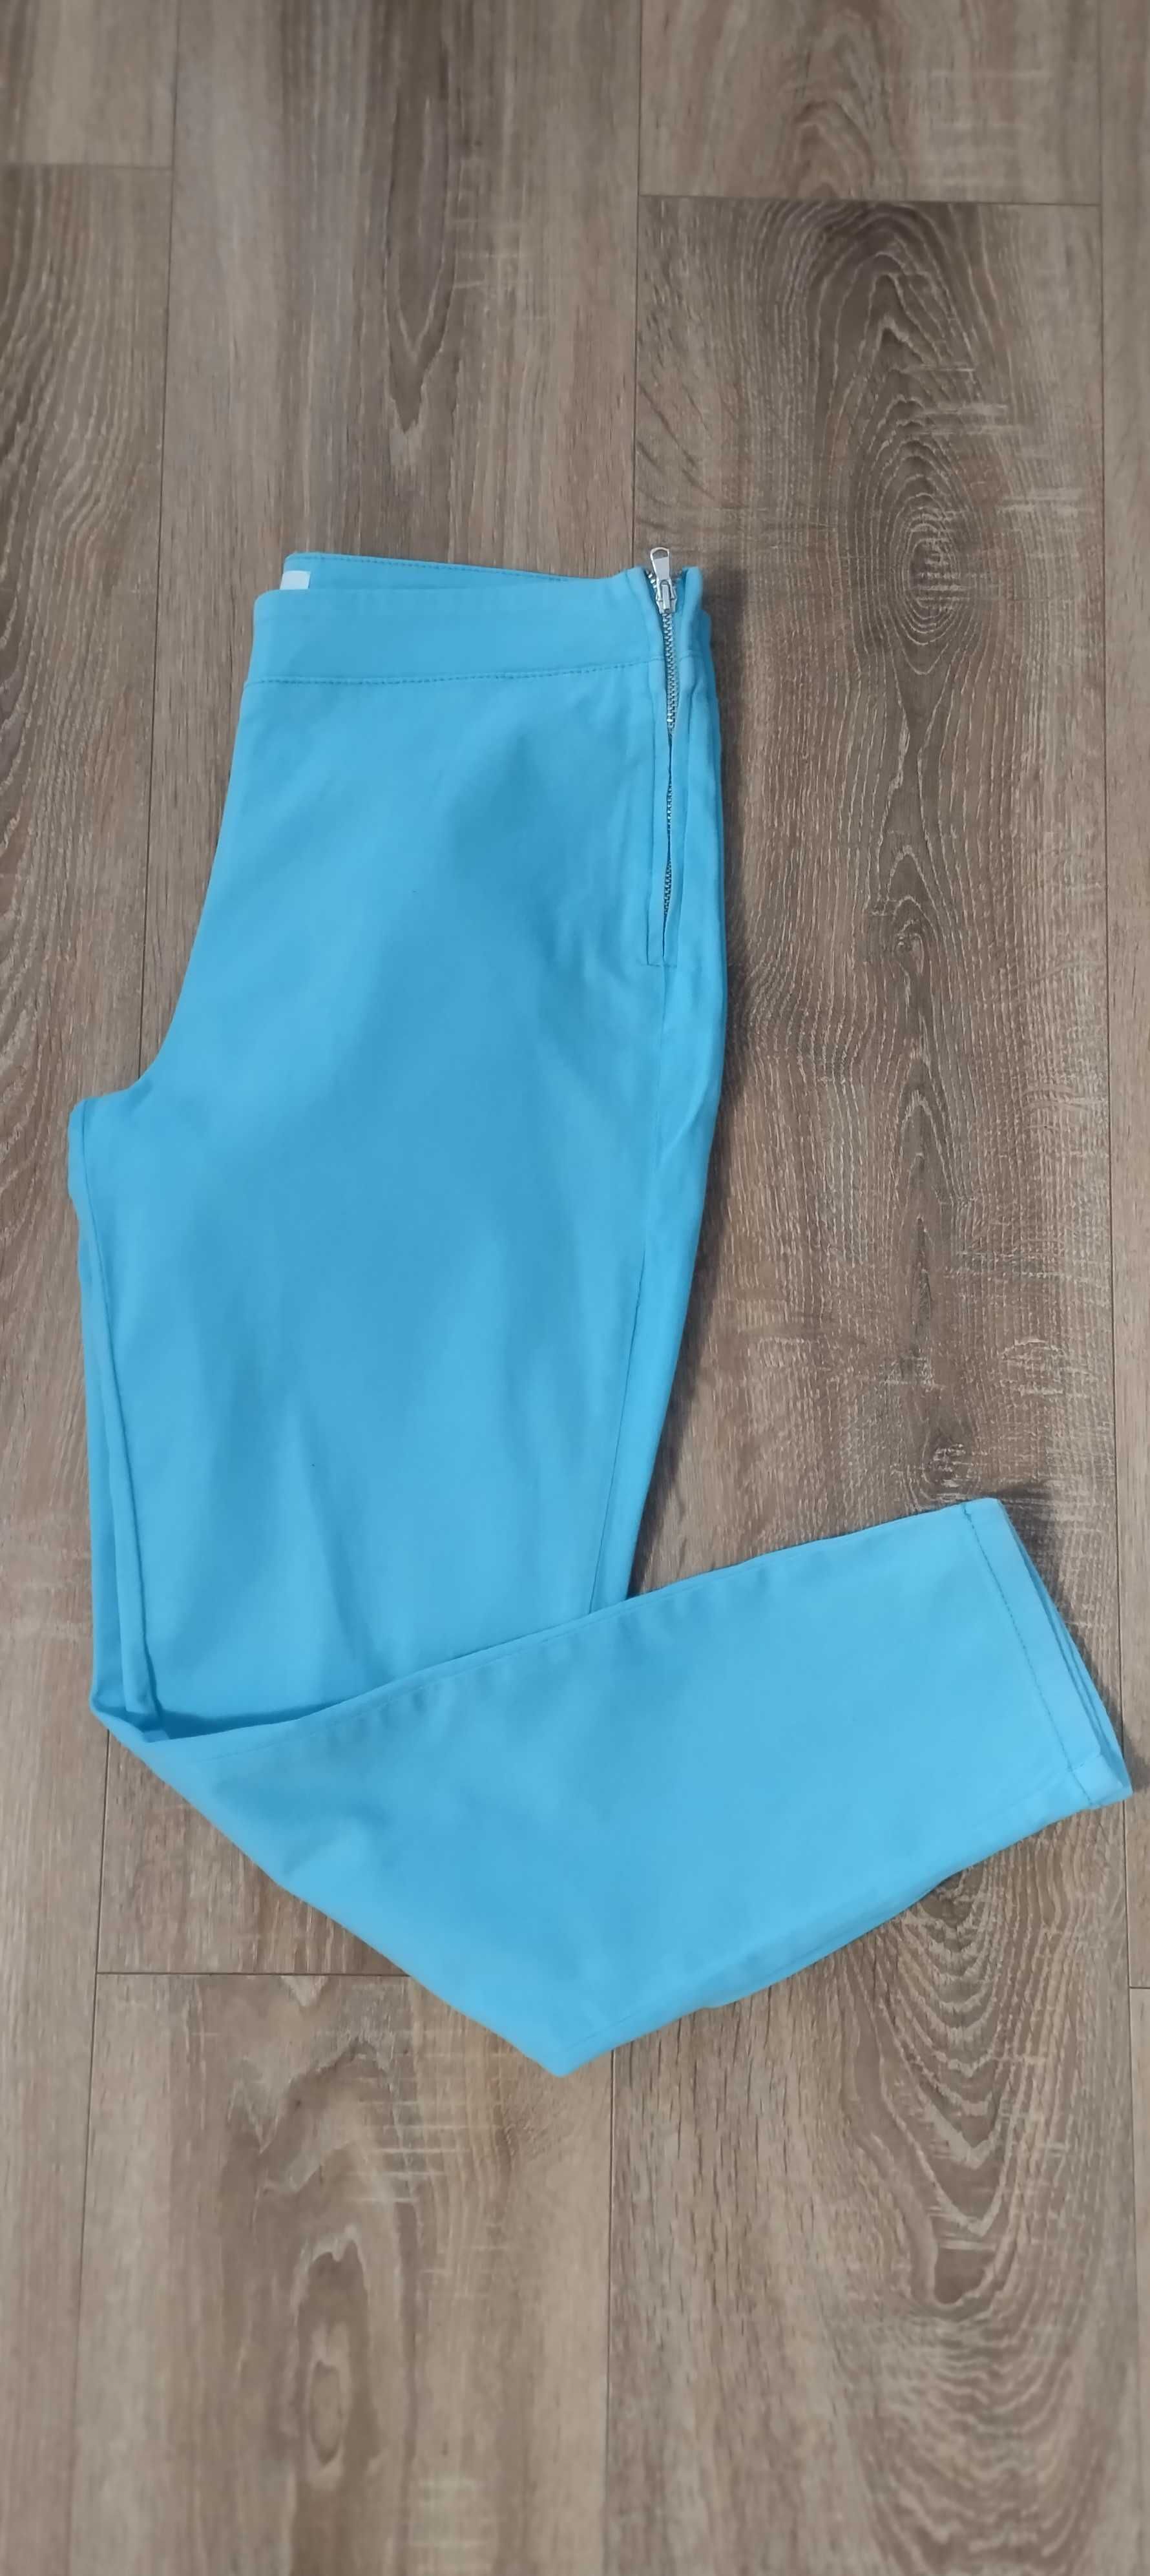 Spodnie damskie rurki niebieskie S/36 Savida